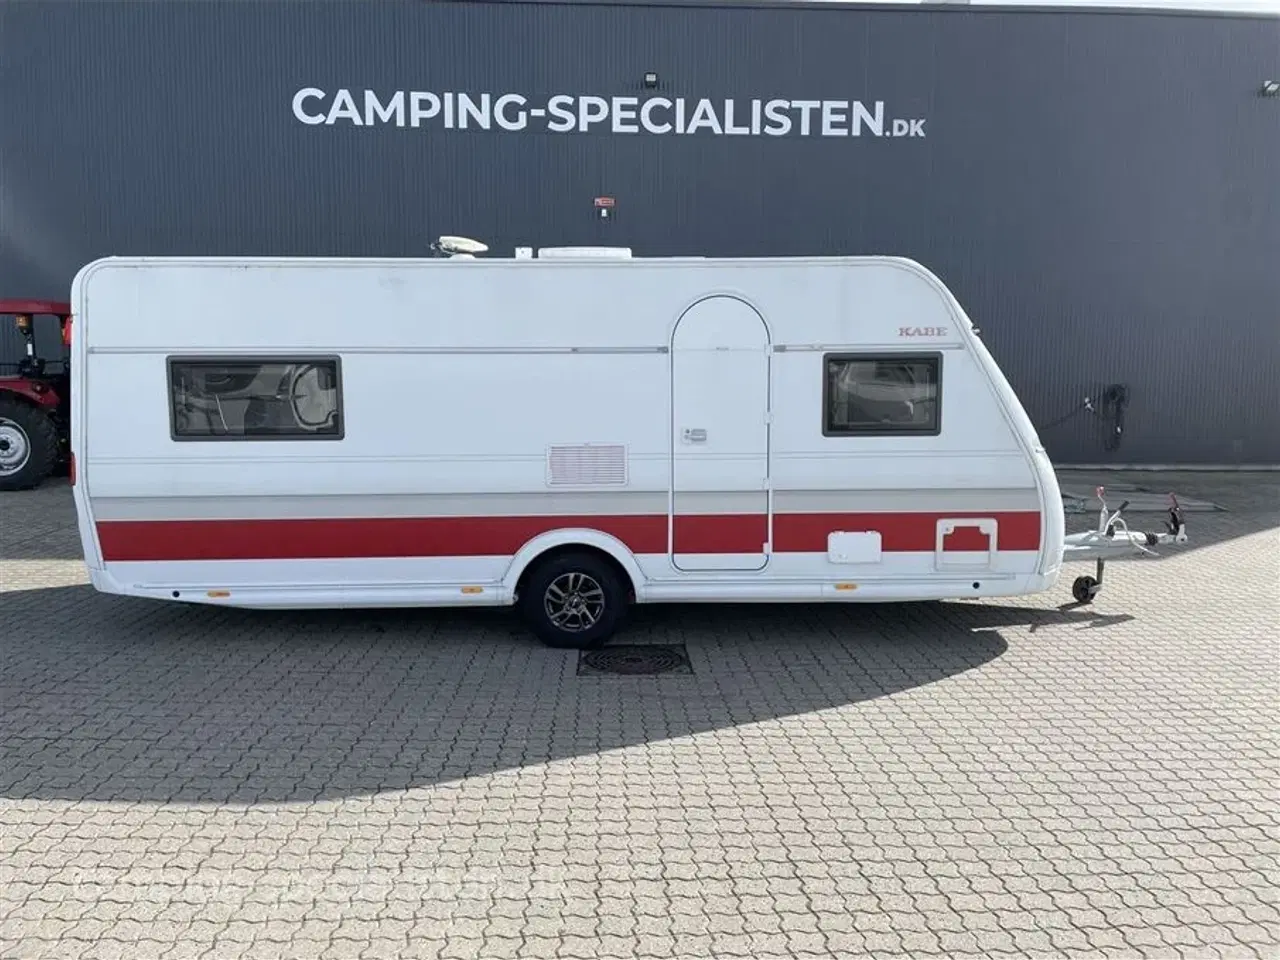 Billede 1 - 2019 - Kabe Ametist 560 GLE KS   Står som ny - Kabe Ametist 560 GLE KS 2019 - Kan nu opleves hos Camping-Specialisten i Silkeborg